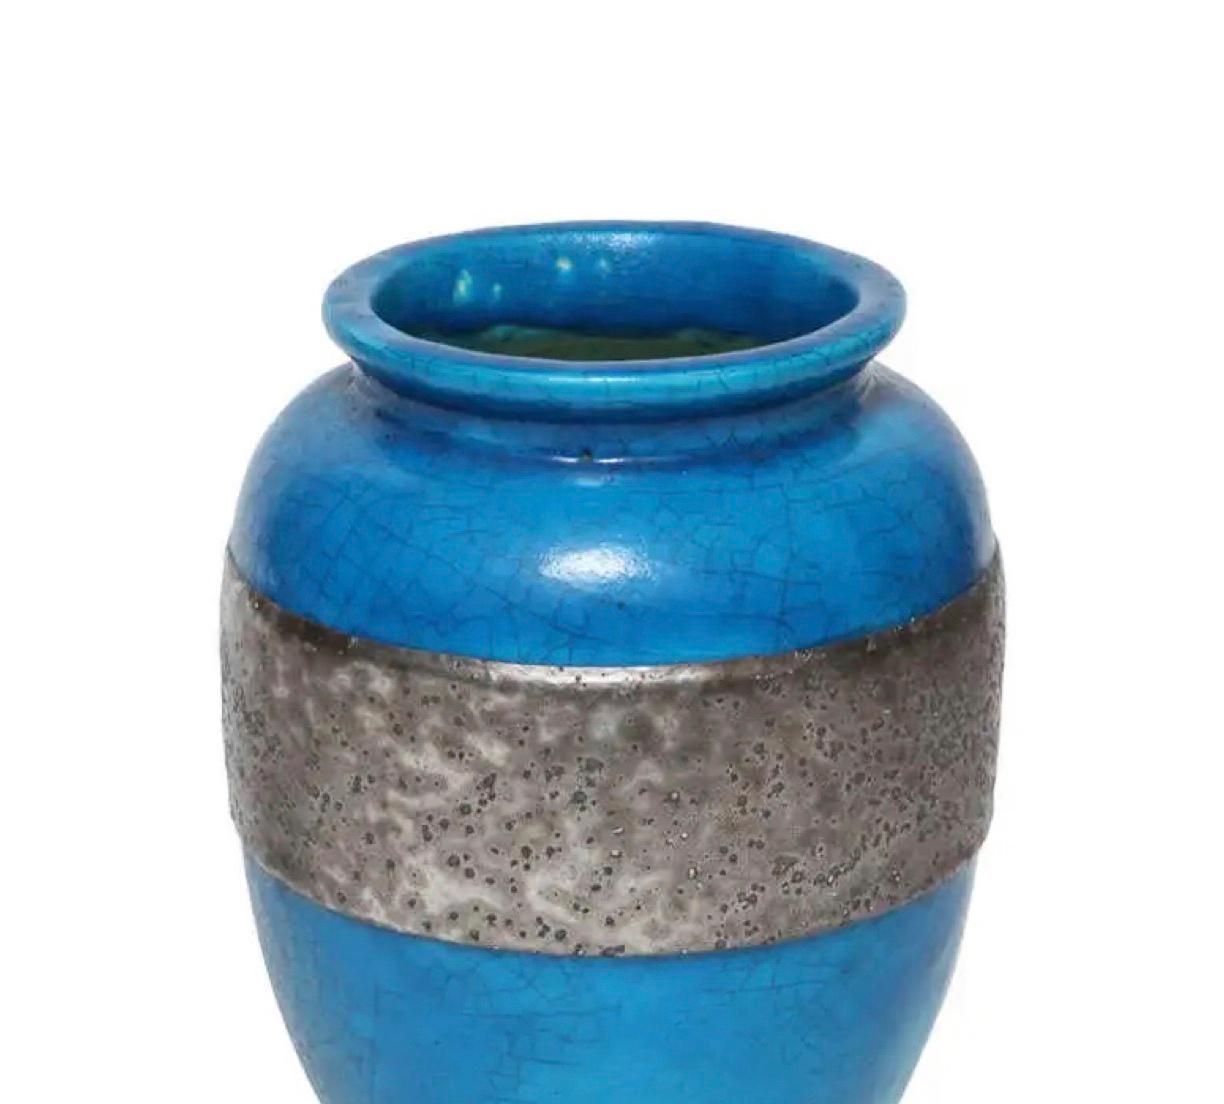 Raoul Lachenal, grand vase en glaçure bleue craquelée avec bande en étain argenté, fabriqué vers les années 1930 - 1940. Il est signé sur la base : 